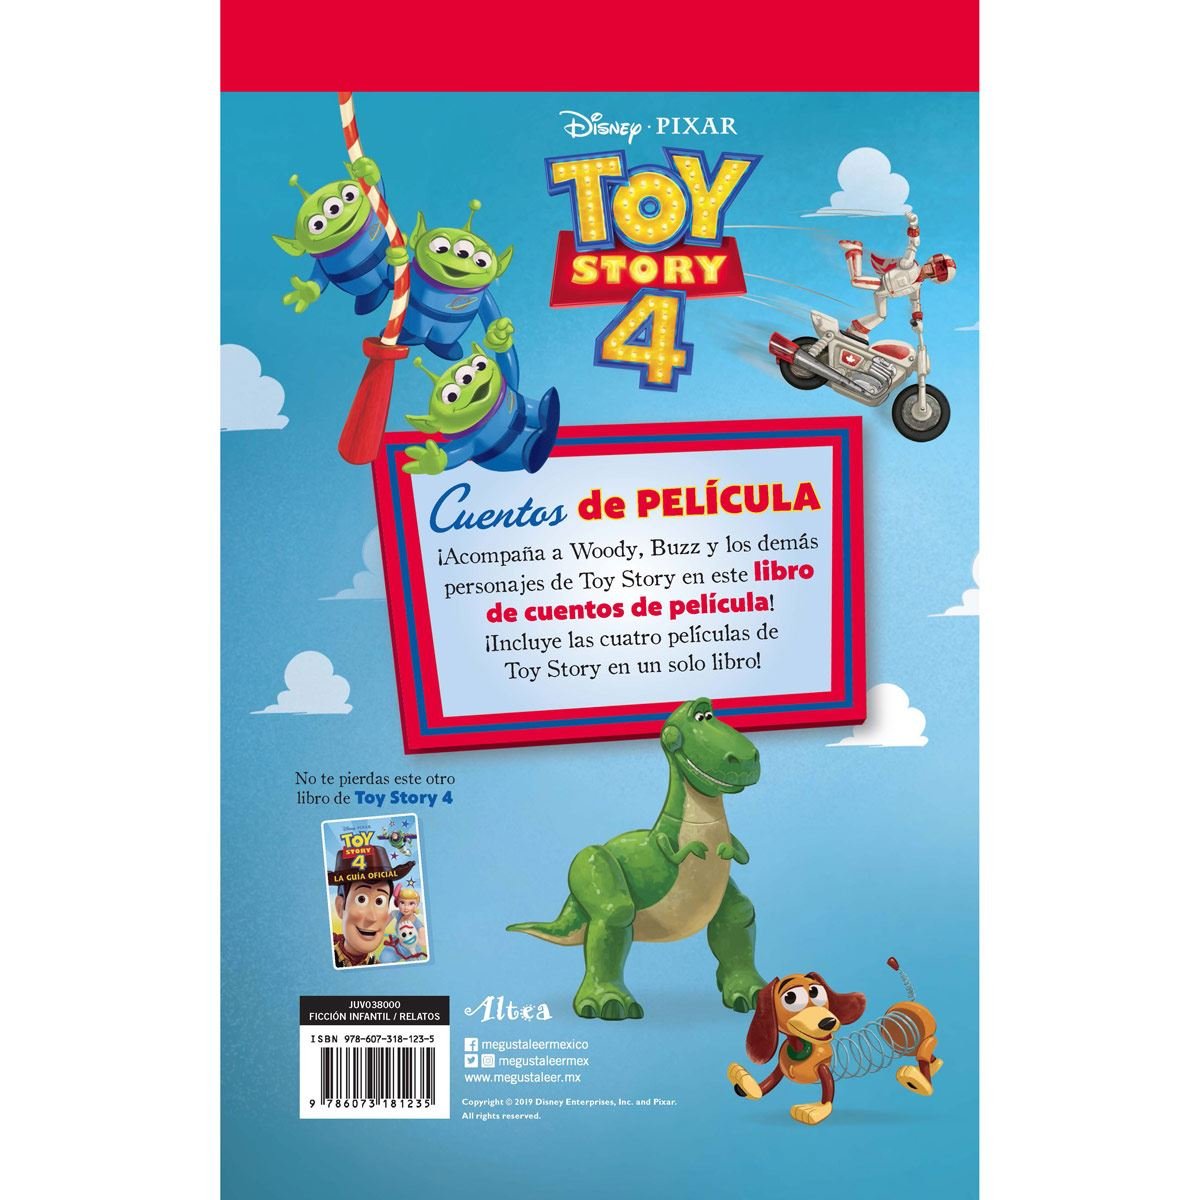 Toy story 4. Cuentos de película